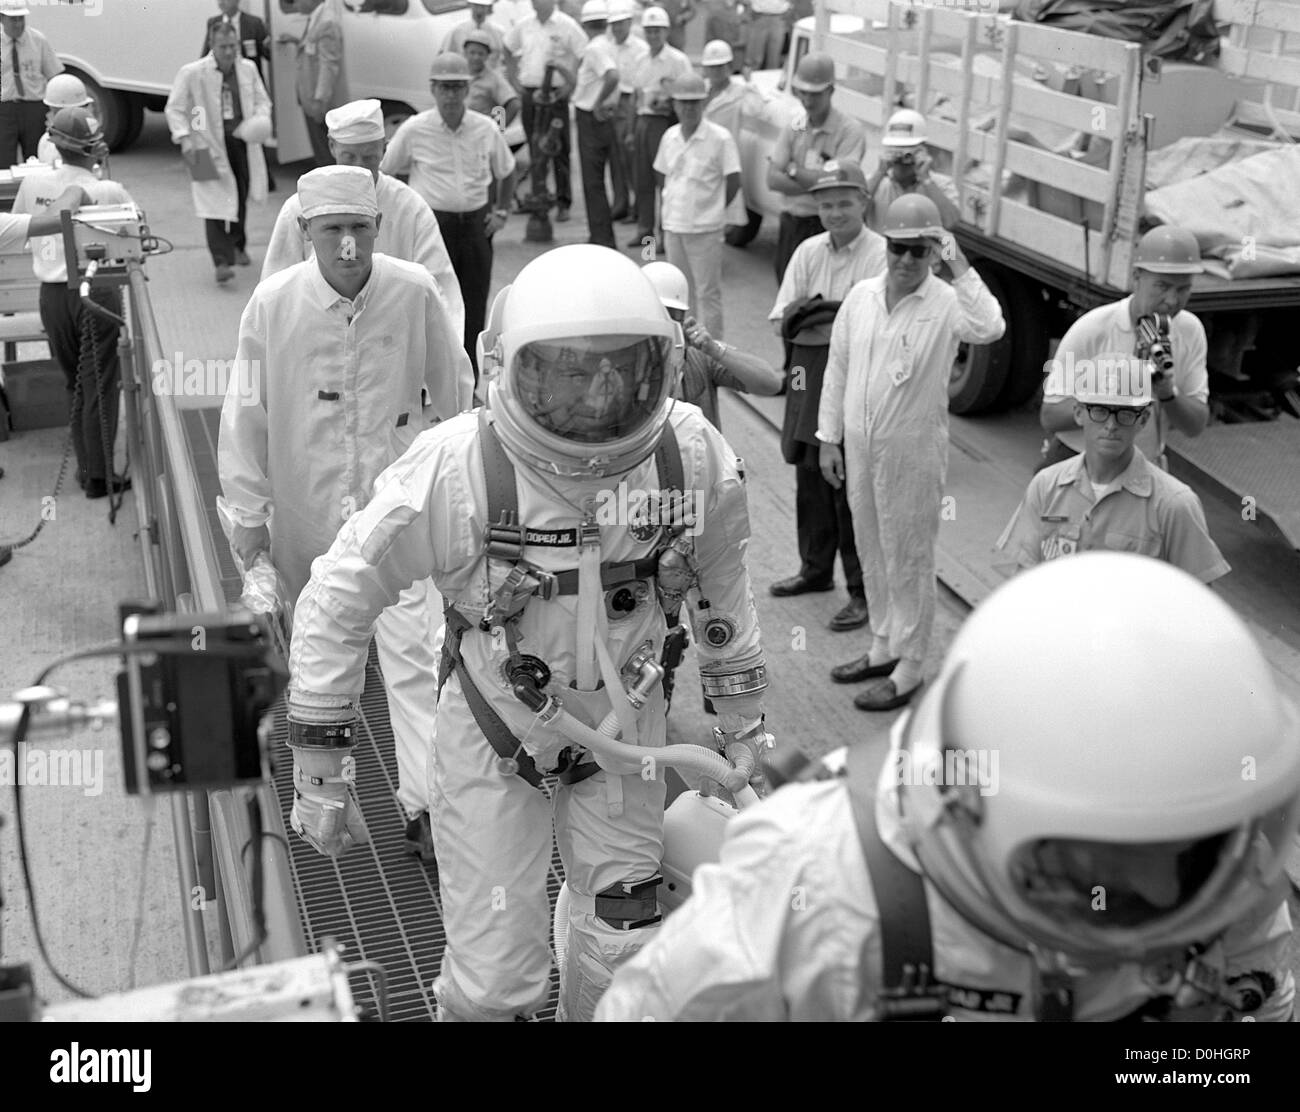 Gemini 5 Premier équipage, Charles "Pete" Conrad et Gordon Cooper dans leurs costumes de la pression d'argent sont accueillis par les employés comme ils mak Banque D'Images